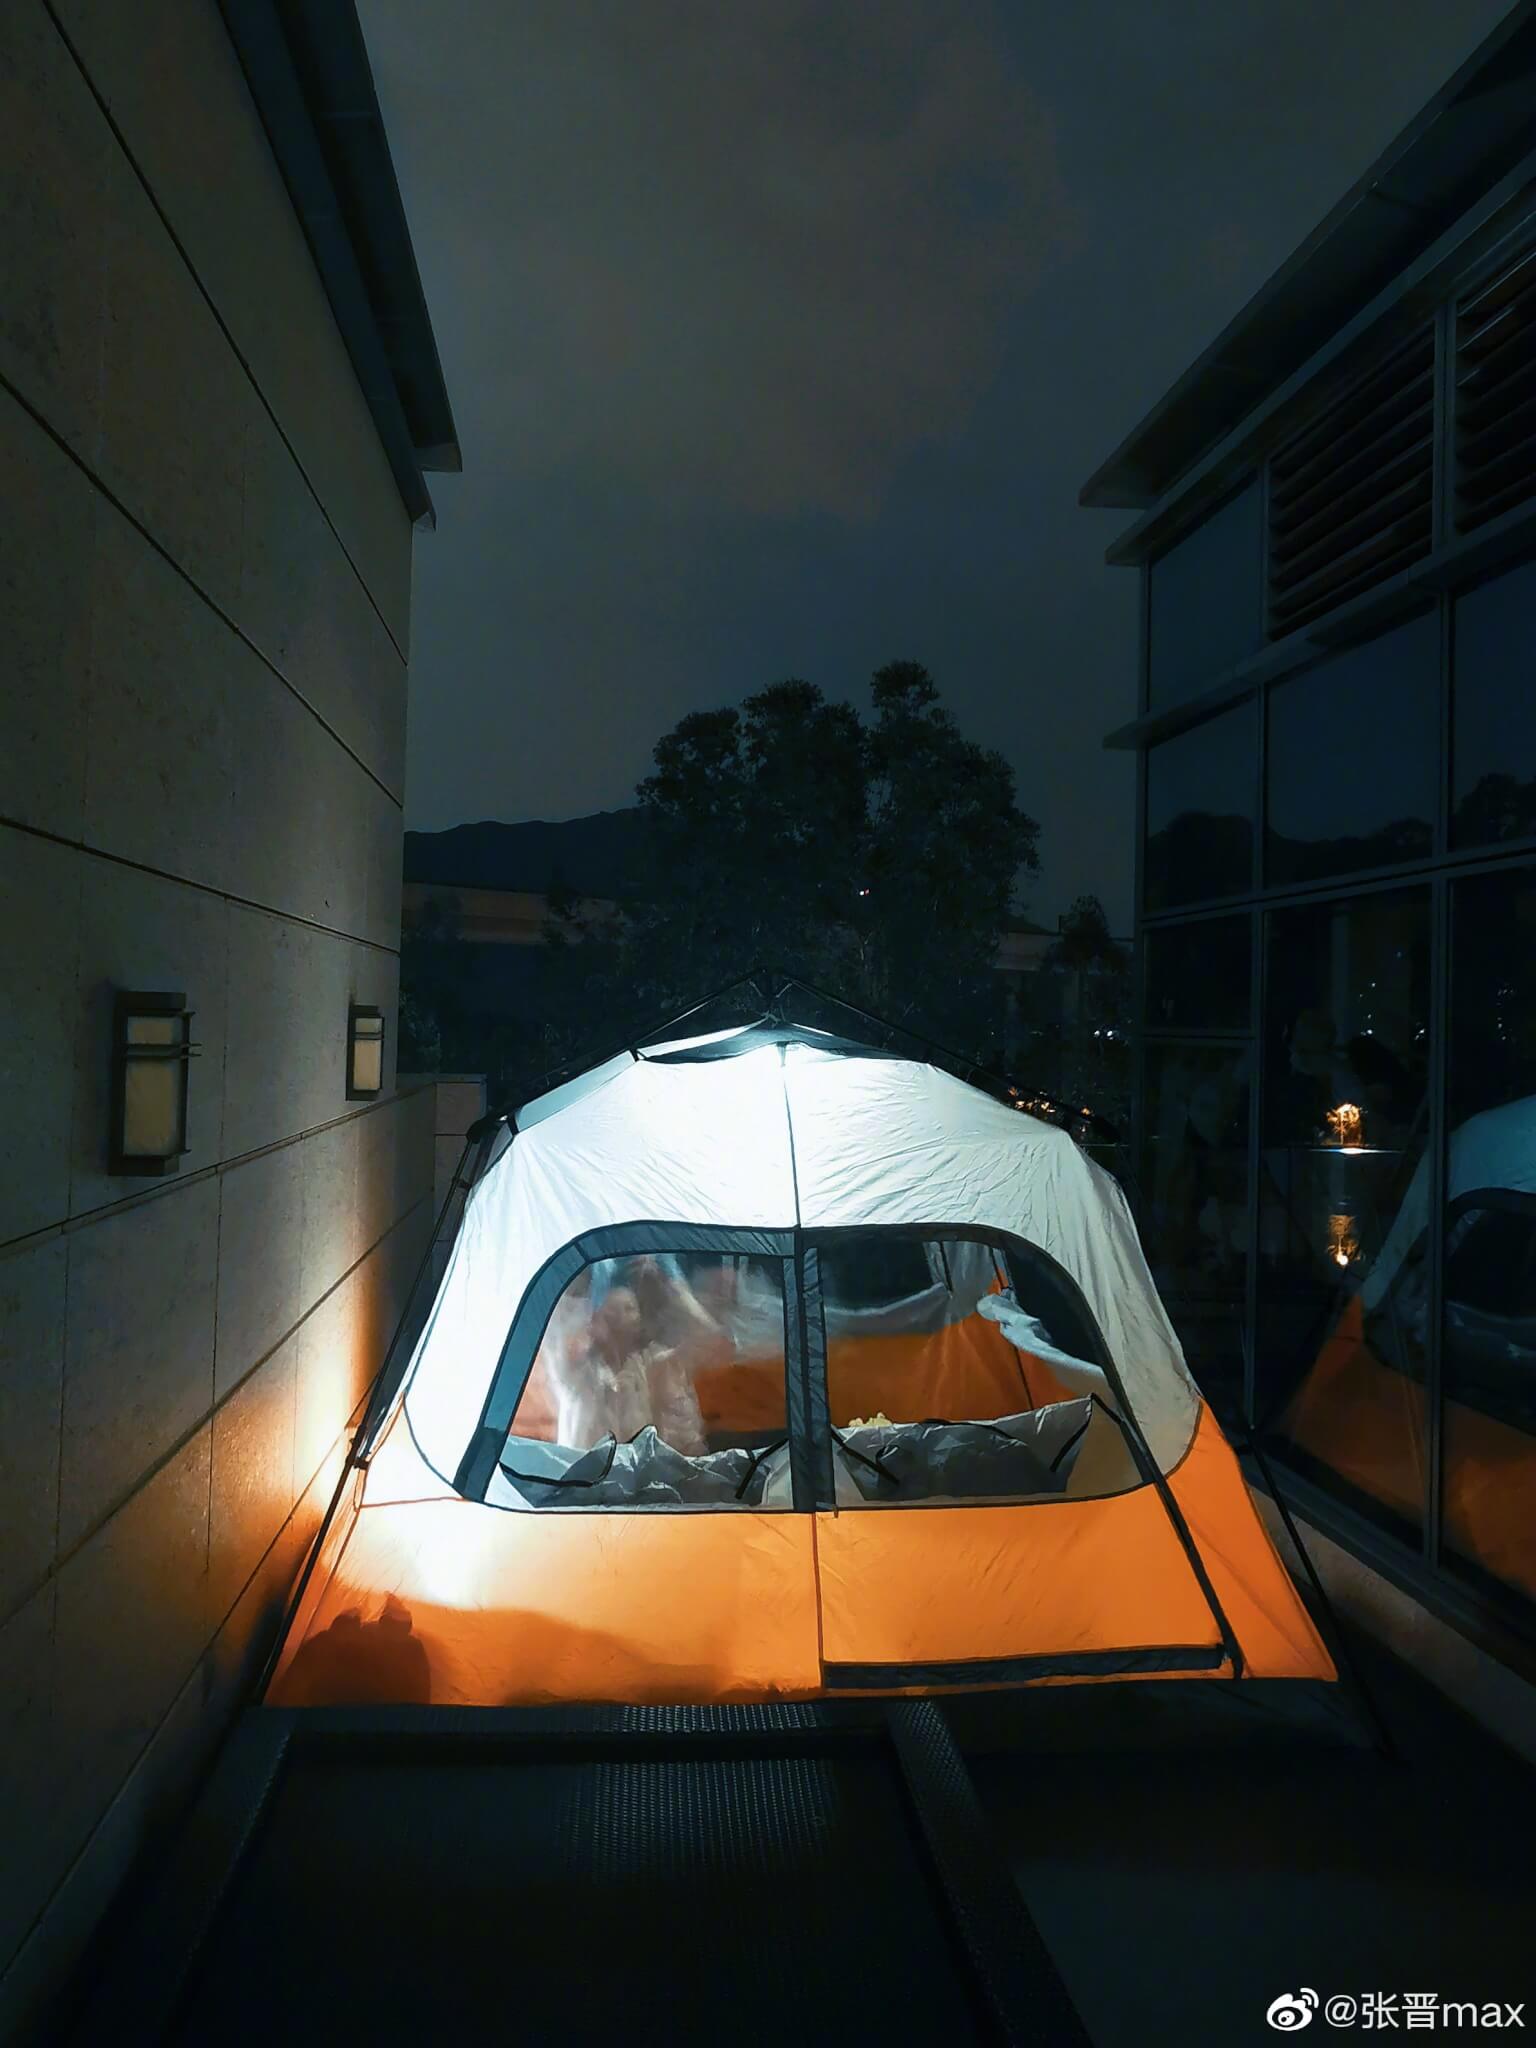 張晉將帳篷置於天台，一家五口齊聚帳篷裏，享受另類「度假」。